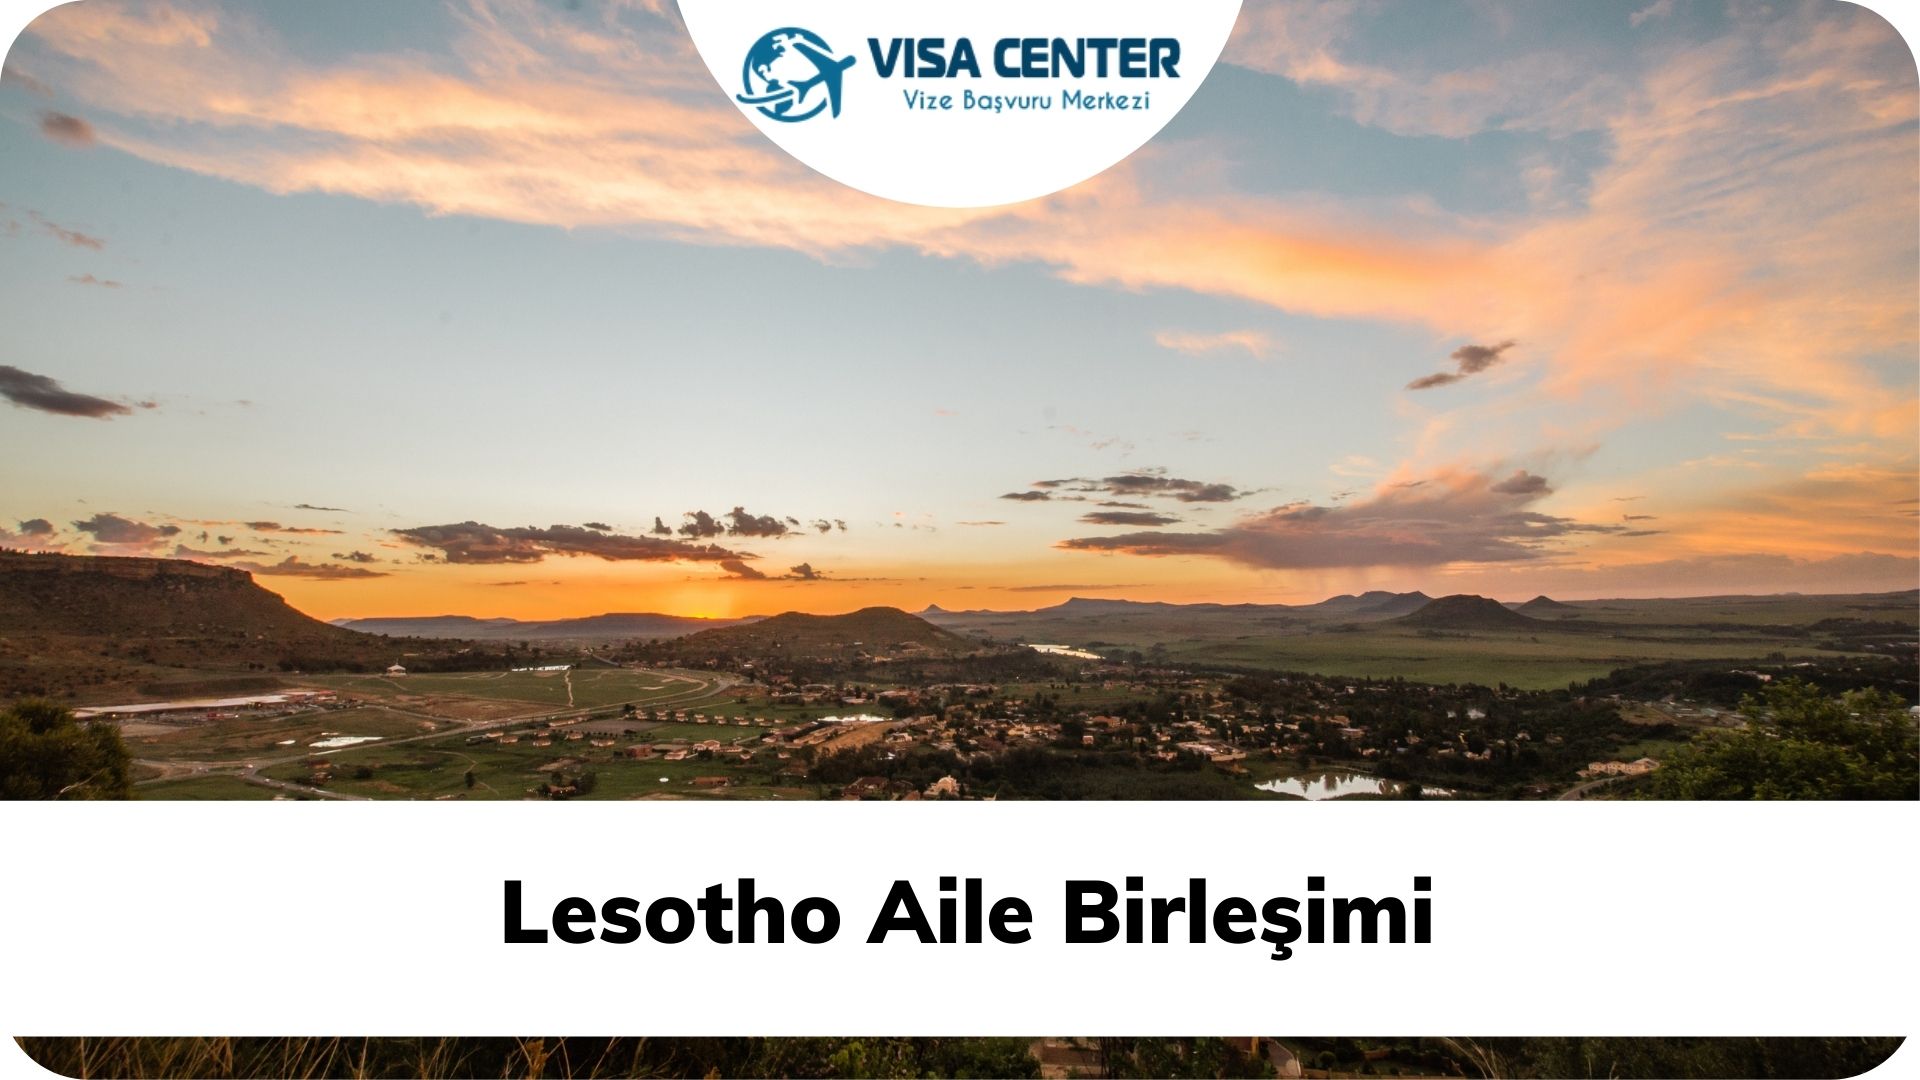 Lesotho Aile Birleşimi